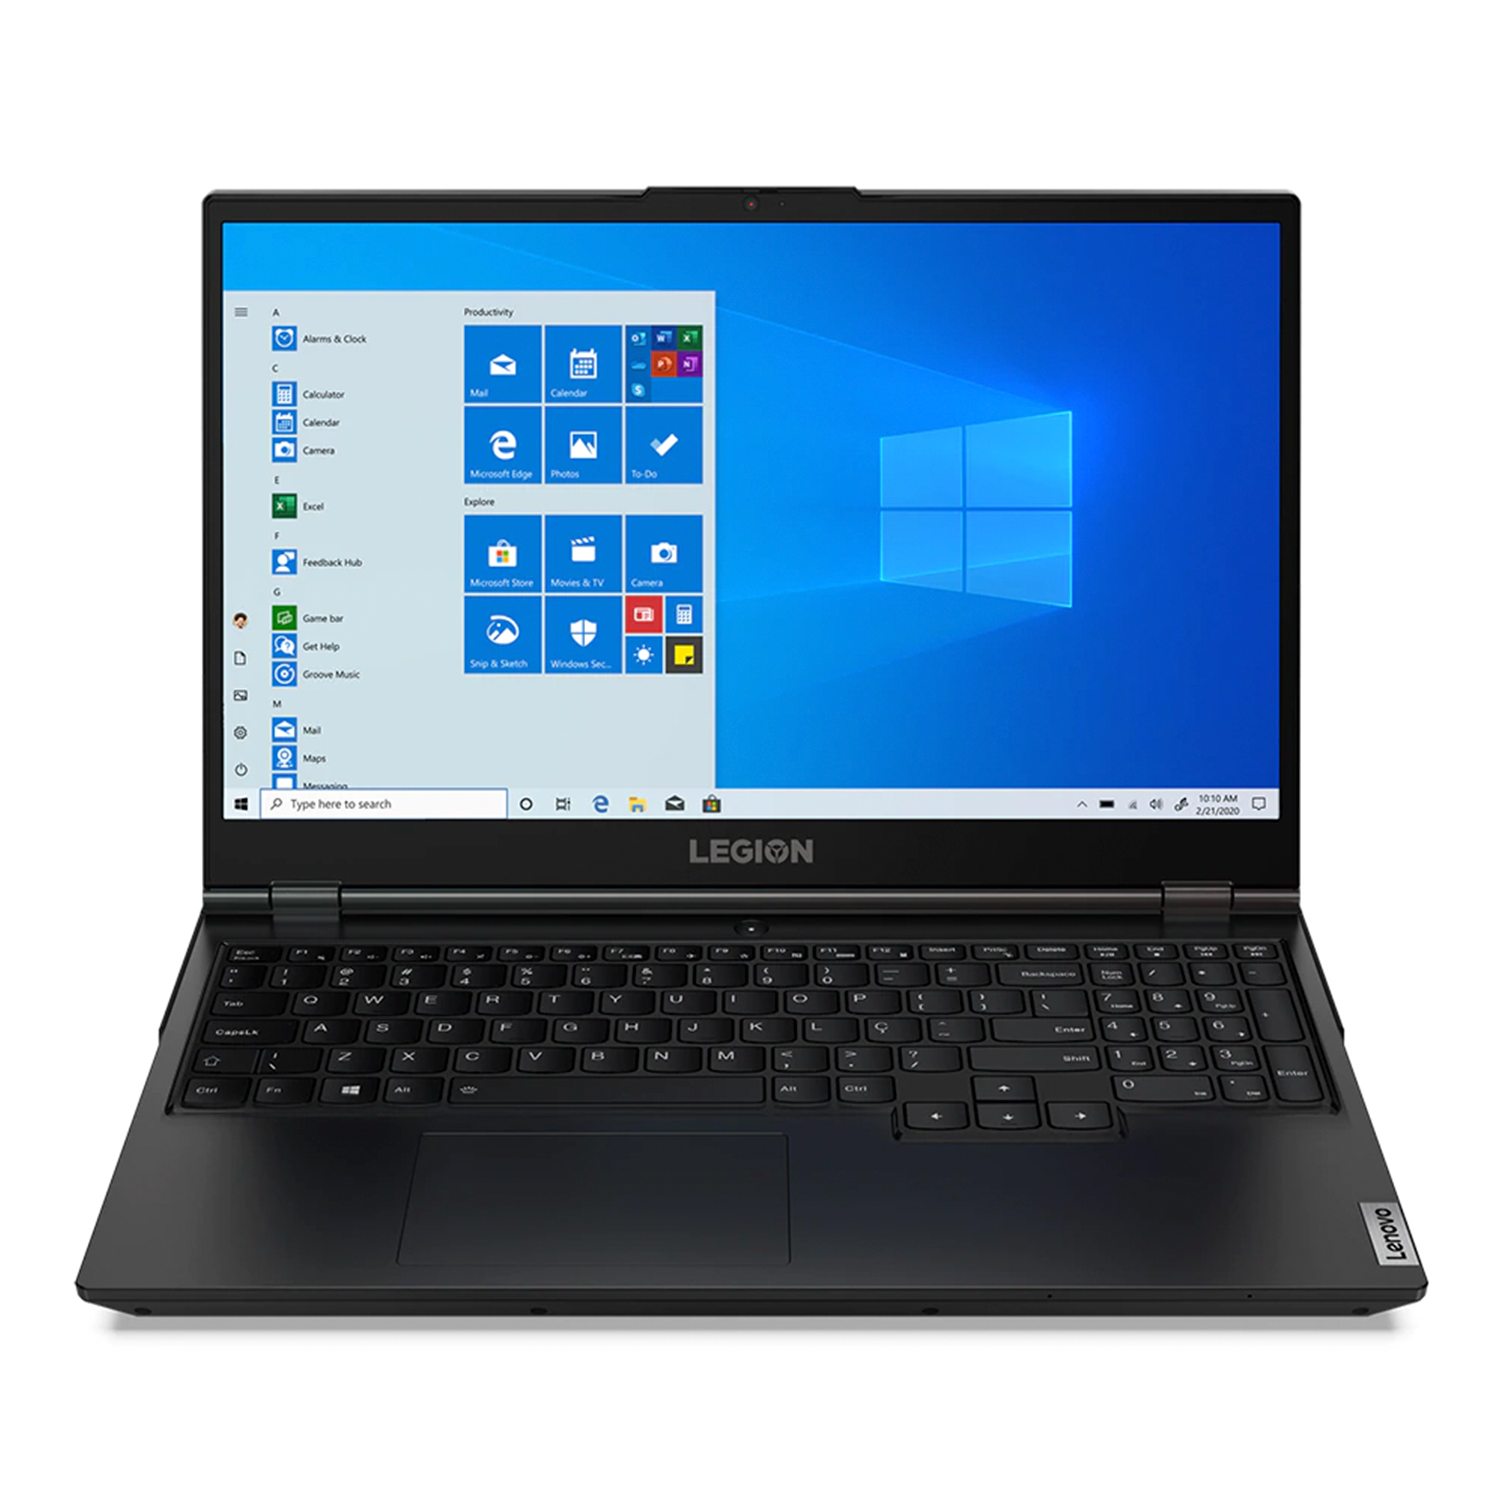 Notebook Gamer Lenovo Legion 15IMH05 I7-10750H 8GB / 512GB SSD / Tela 15.6" FHD / GTX1650 4GB